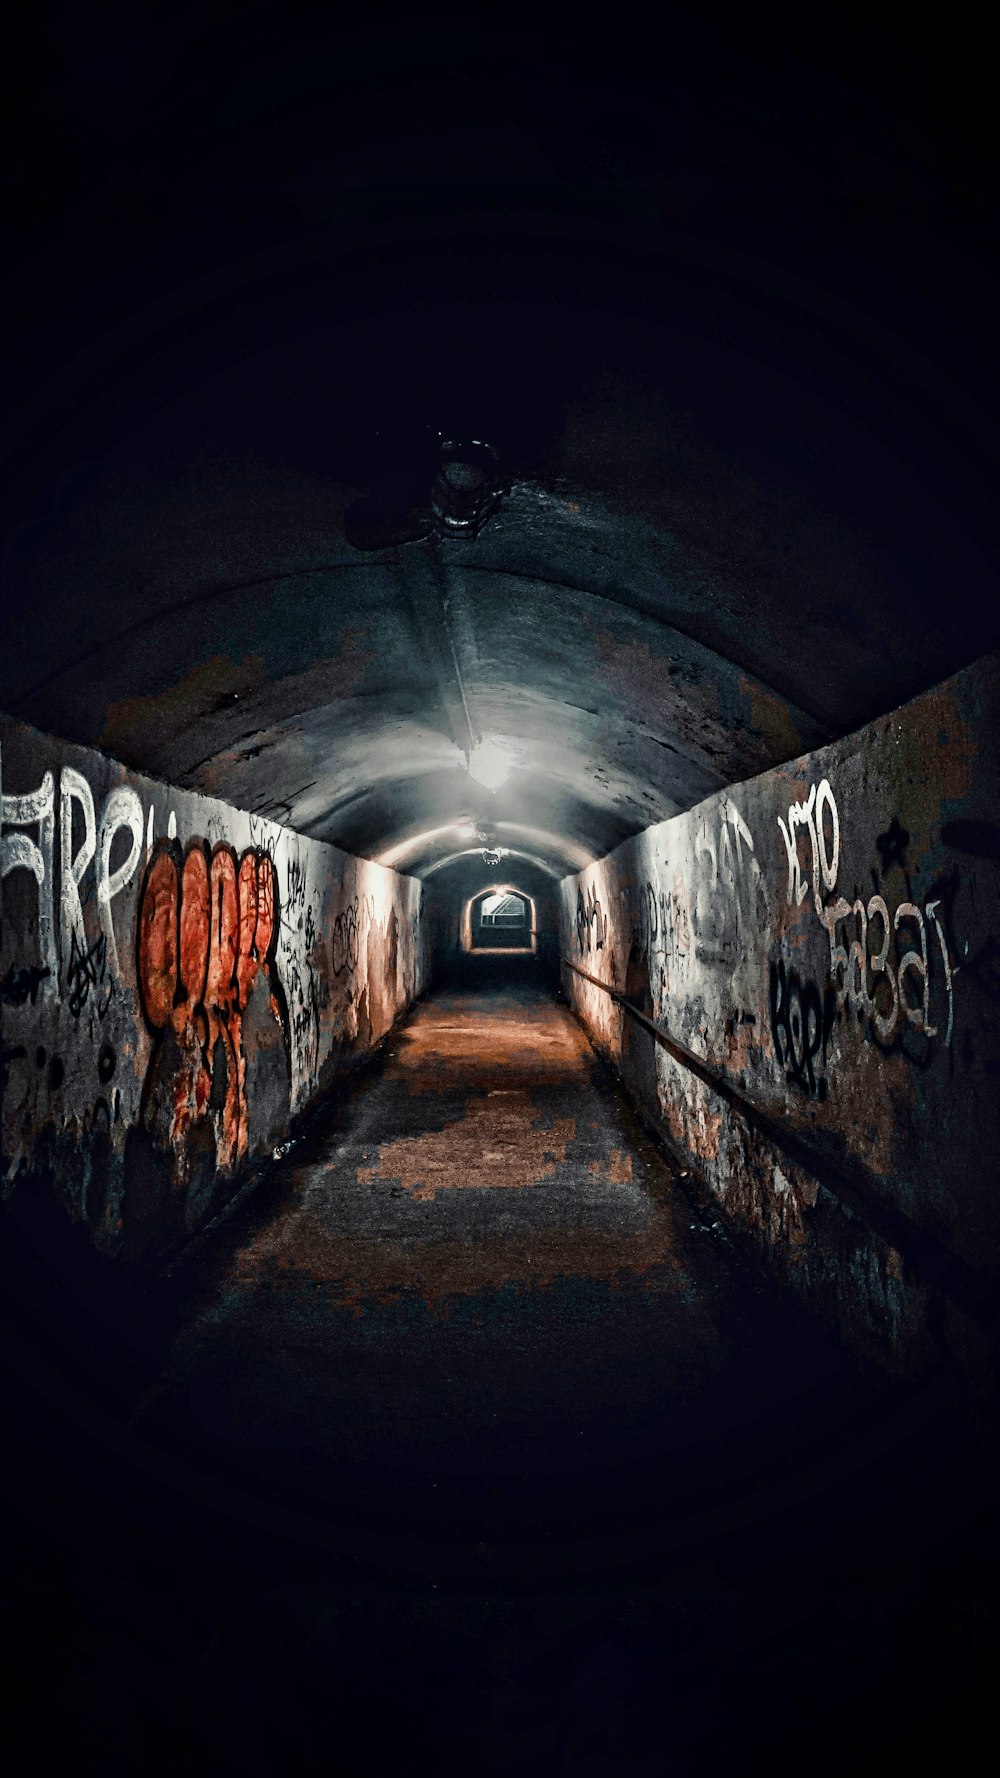 끝에 빛이 있는 터널